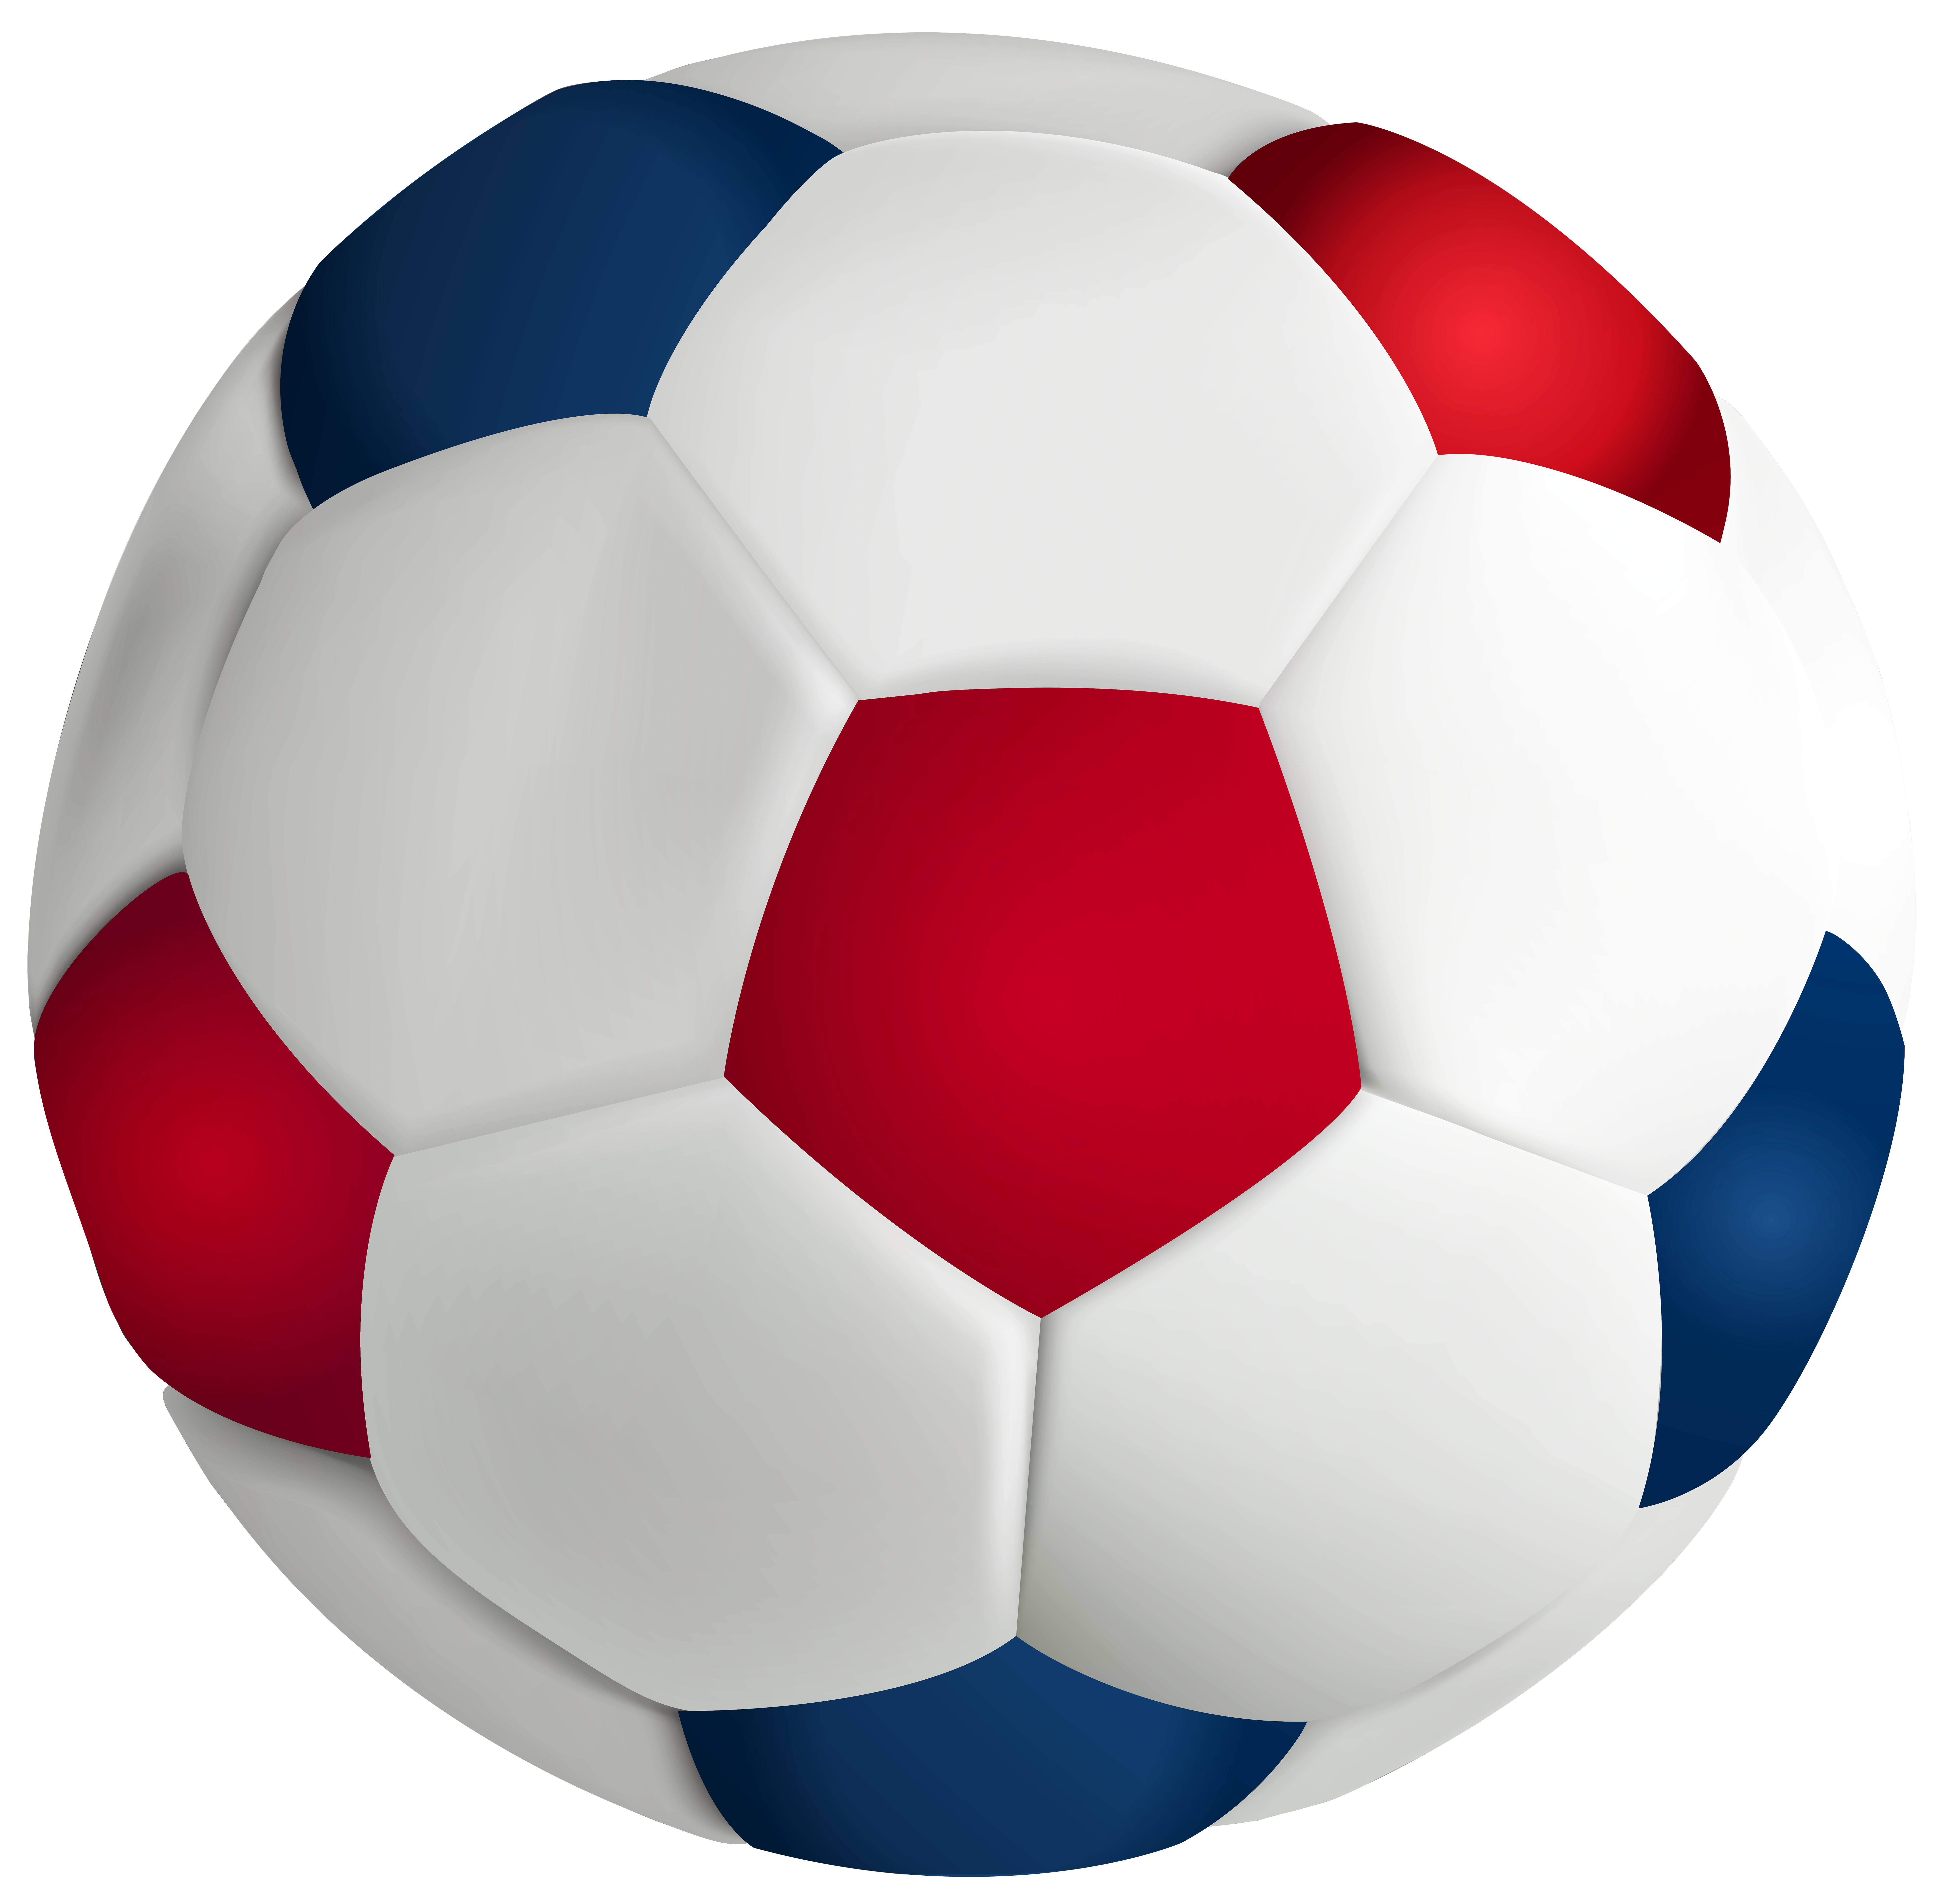 Ball part. Футбольный мяч. Мячик на белом фоне. Футбольный мяч без фона. Футбольный мяч на прозрачном фоне.